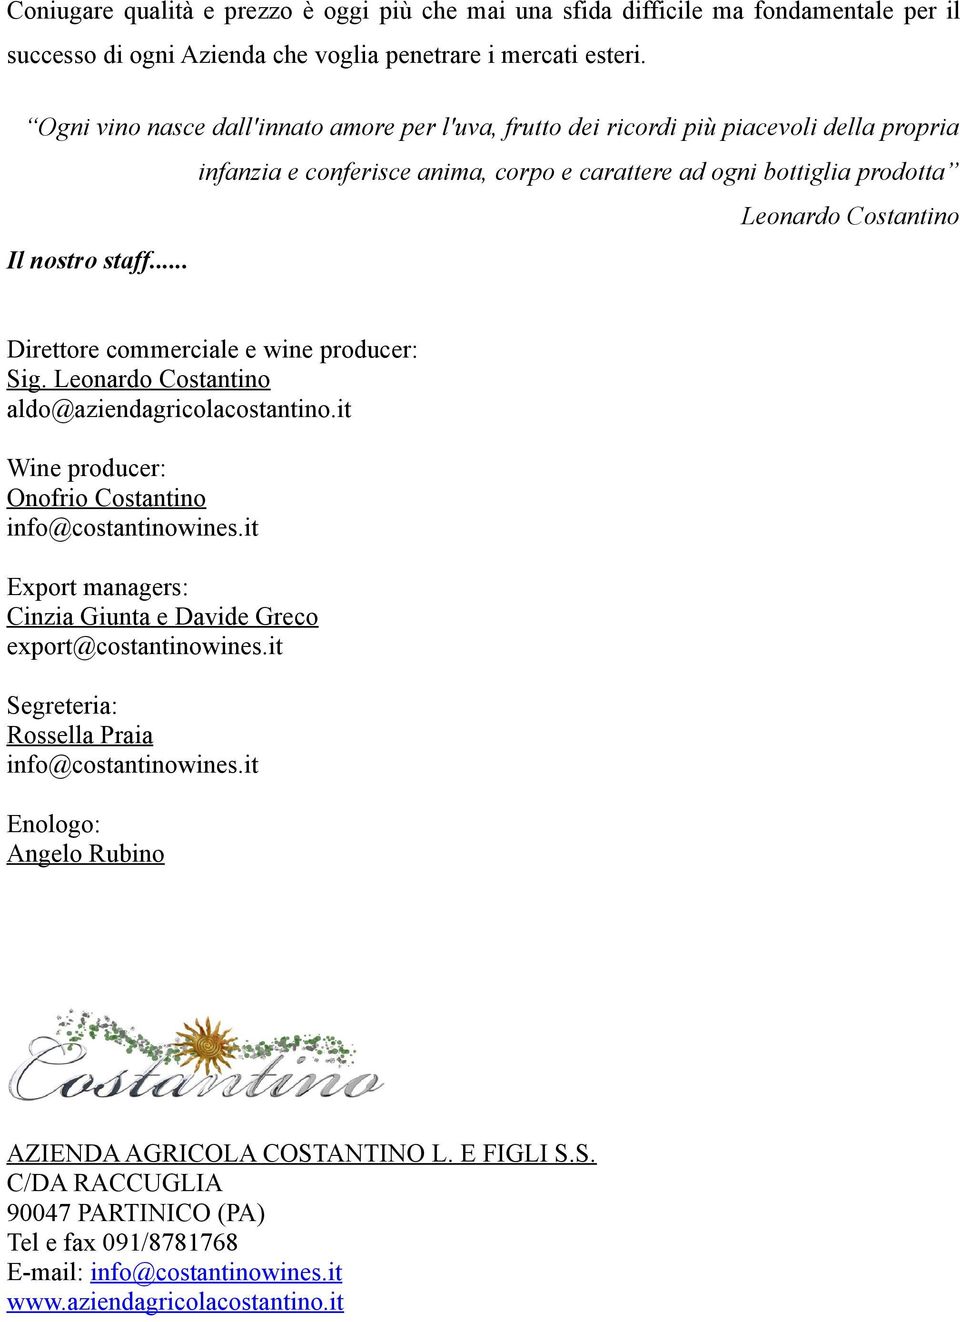 staff... Direttore commerciale e wine producer: Sig. Leonardo Costantino aldo@aziendagricolacostantino.it Wine producer: Onofrio Costantino info@costantinowines.